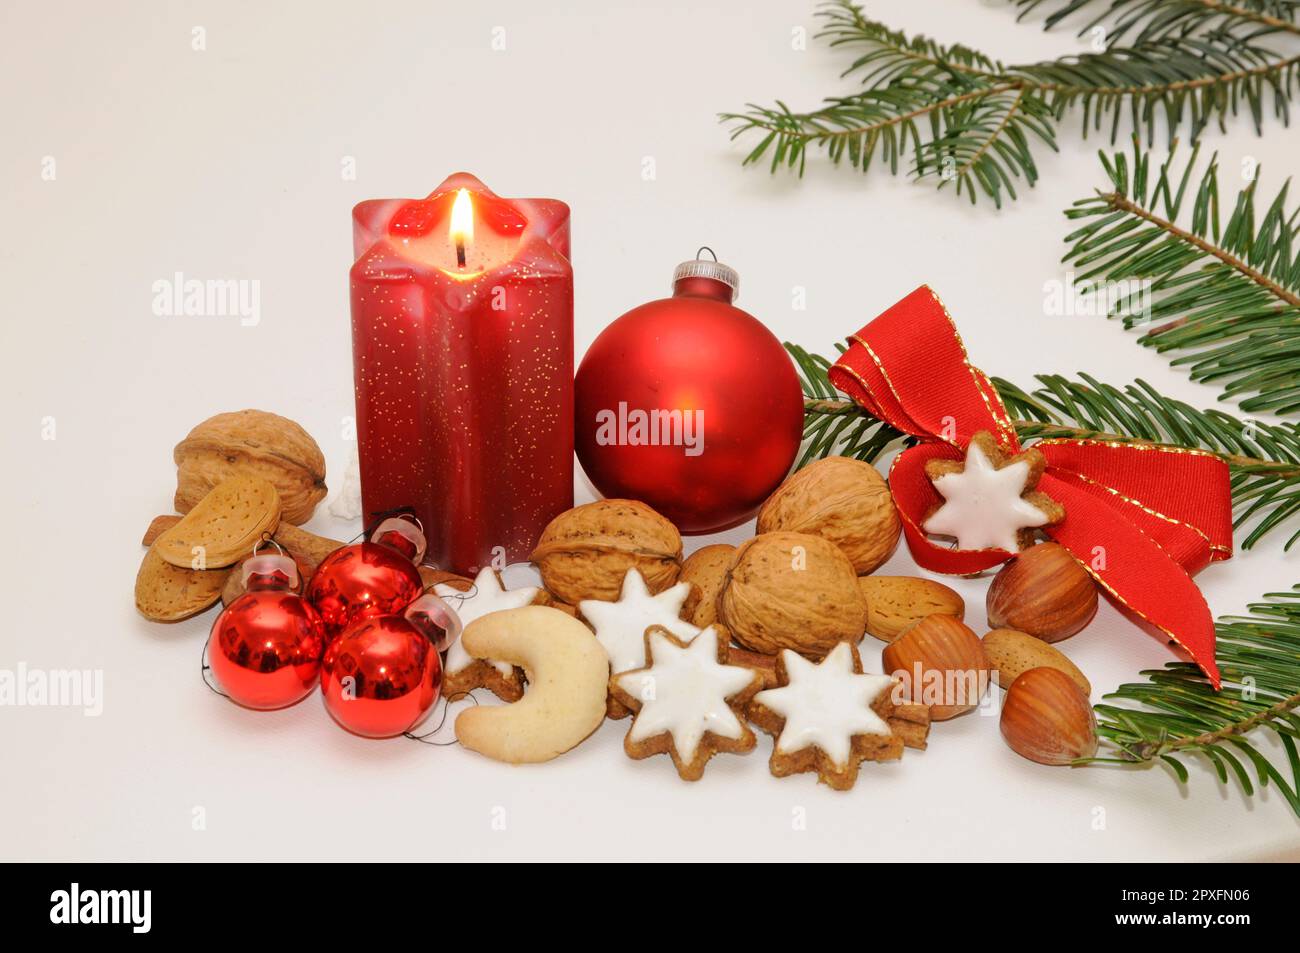 weihnachten, deko, avvento, kerze, gebäck, nüsse, zweige, weihnachtlich, christbaumkugel, weihnacht, festlich Foto Stock